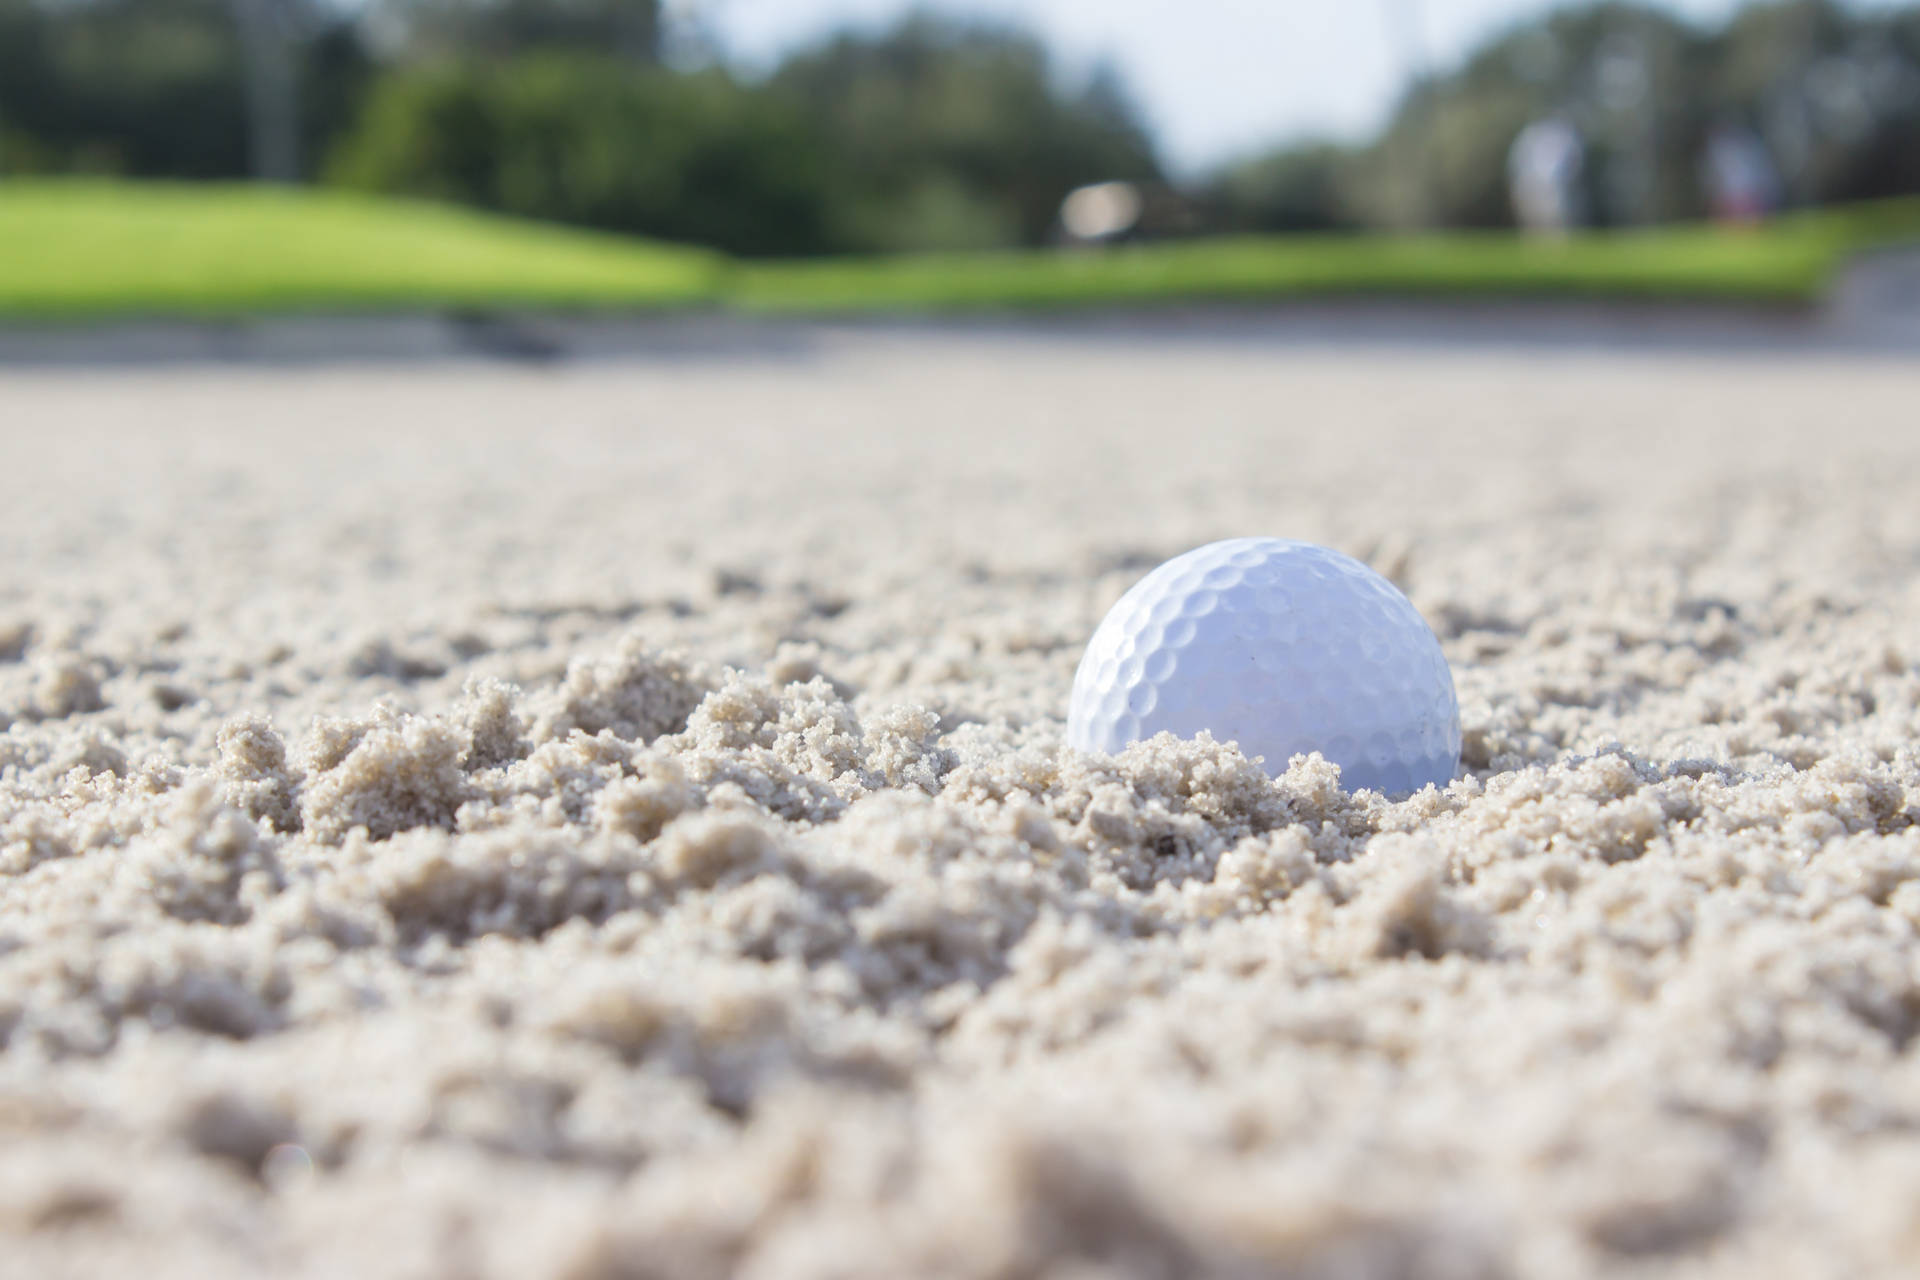 Ultrahd Golfball Im Sand Wallpaper